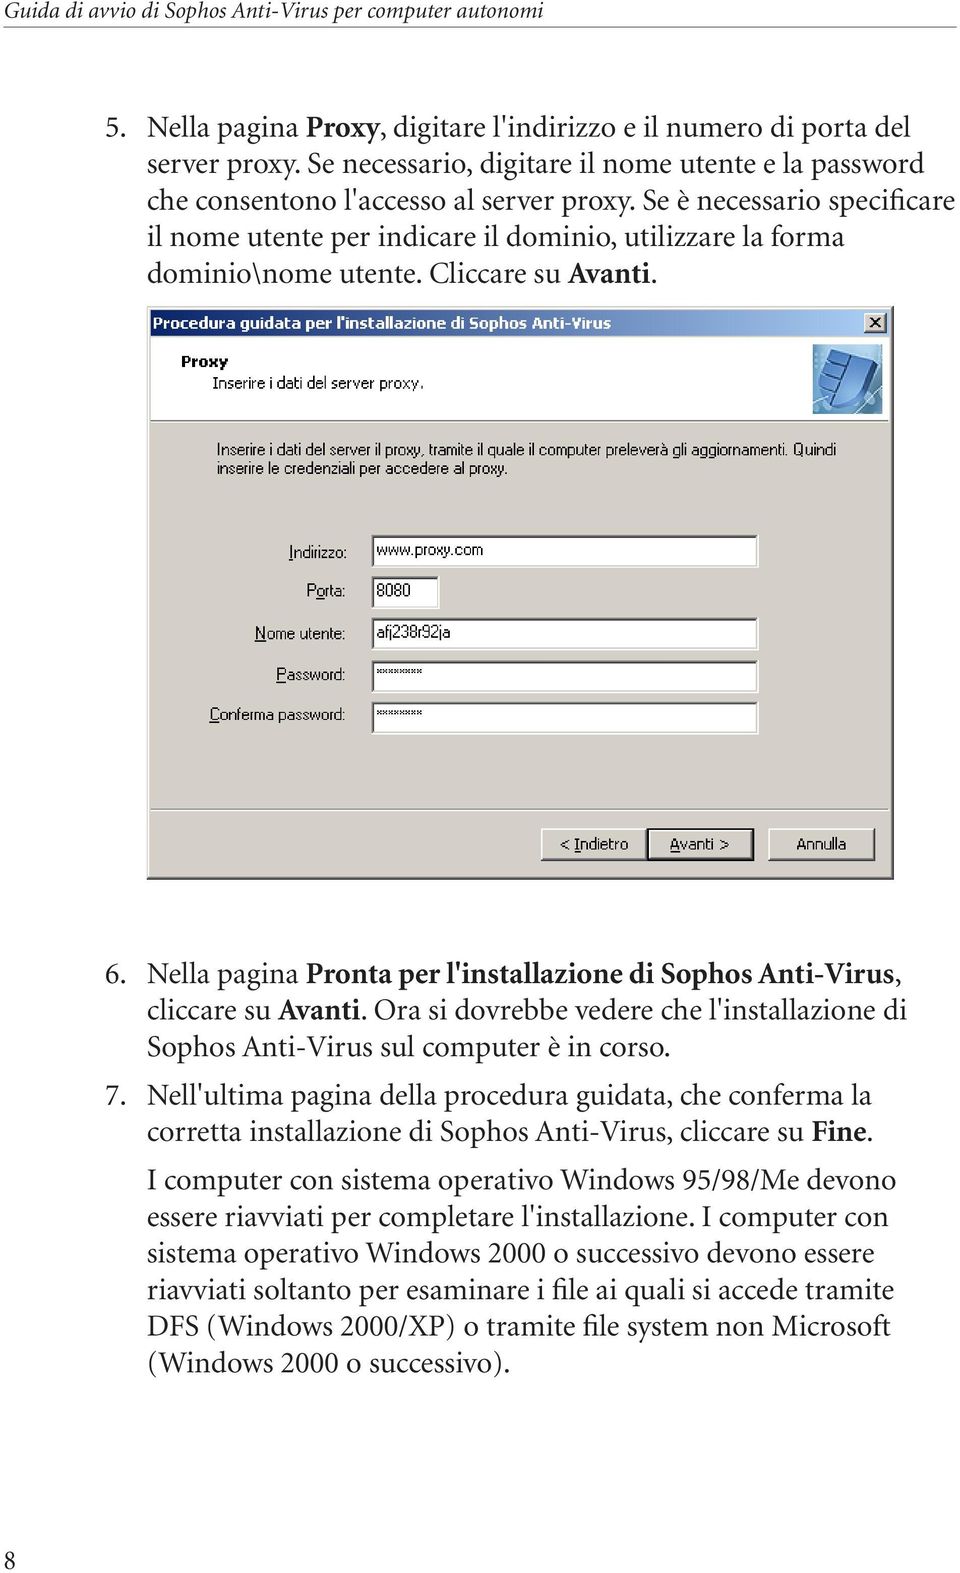 Nella pagina Pronta per l'installazione di Sophos Anti Virus, cliccare su Avanti. Ora si dovrebbe vedere che l'installazione di Sophos Anti-Virus sul computer è in corso. 7.